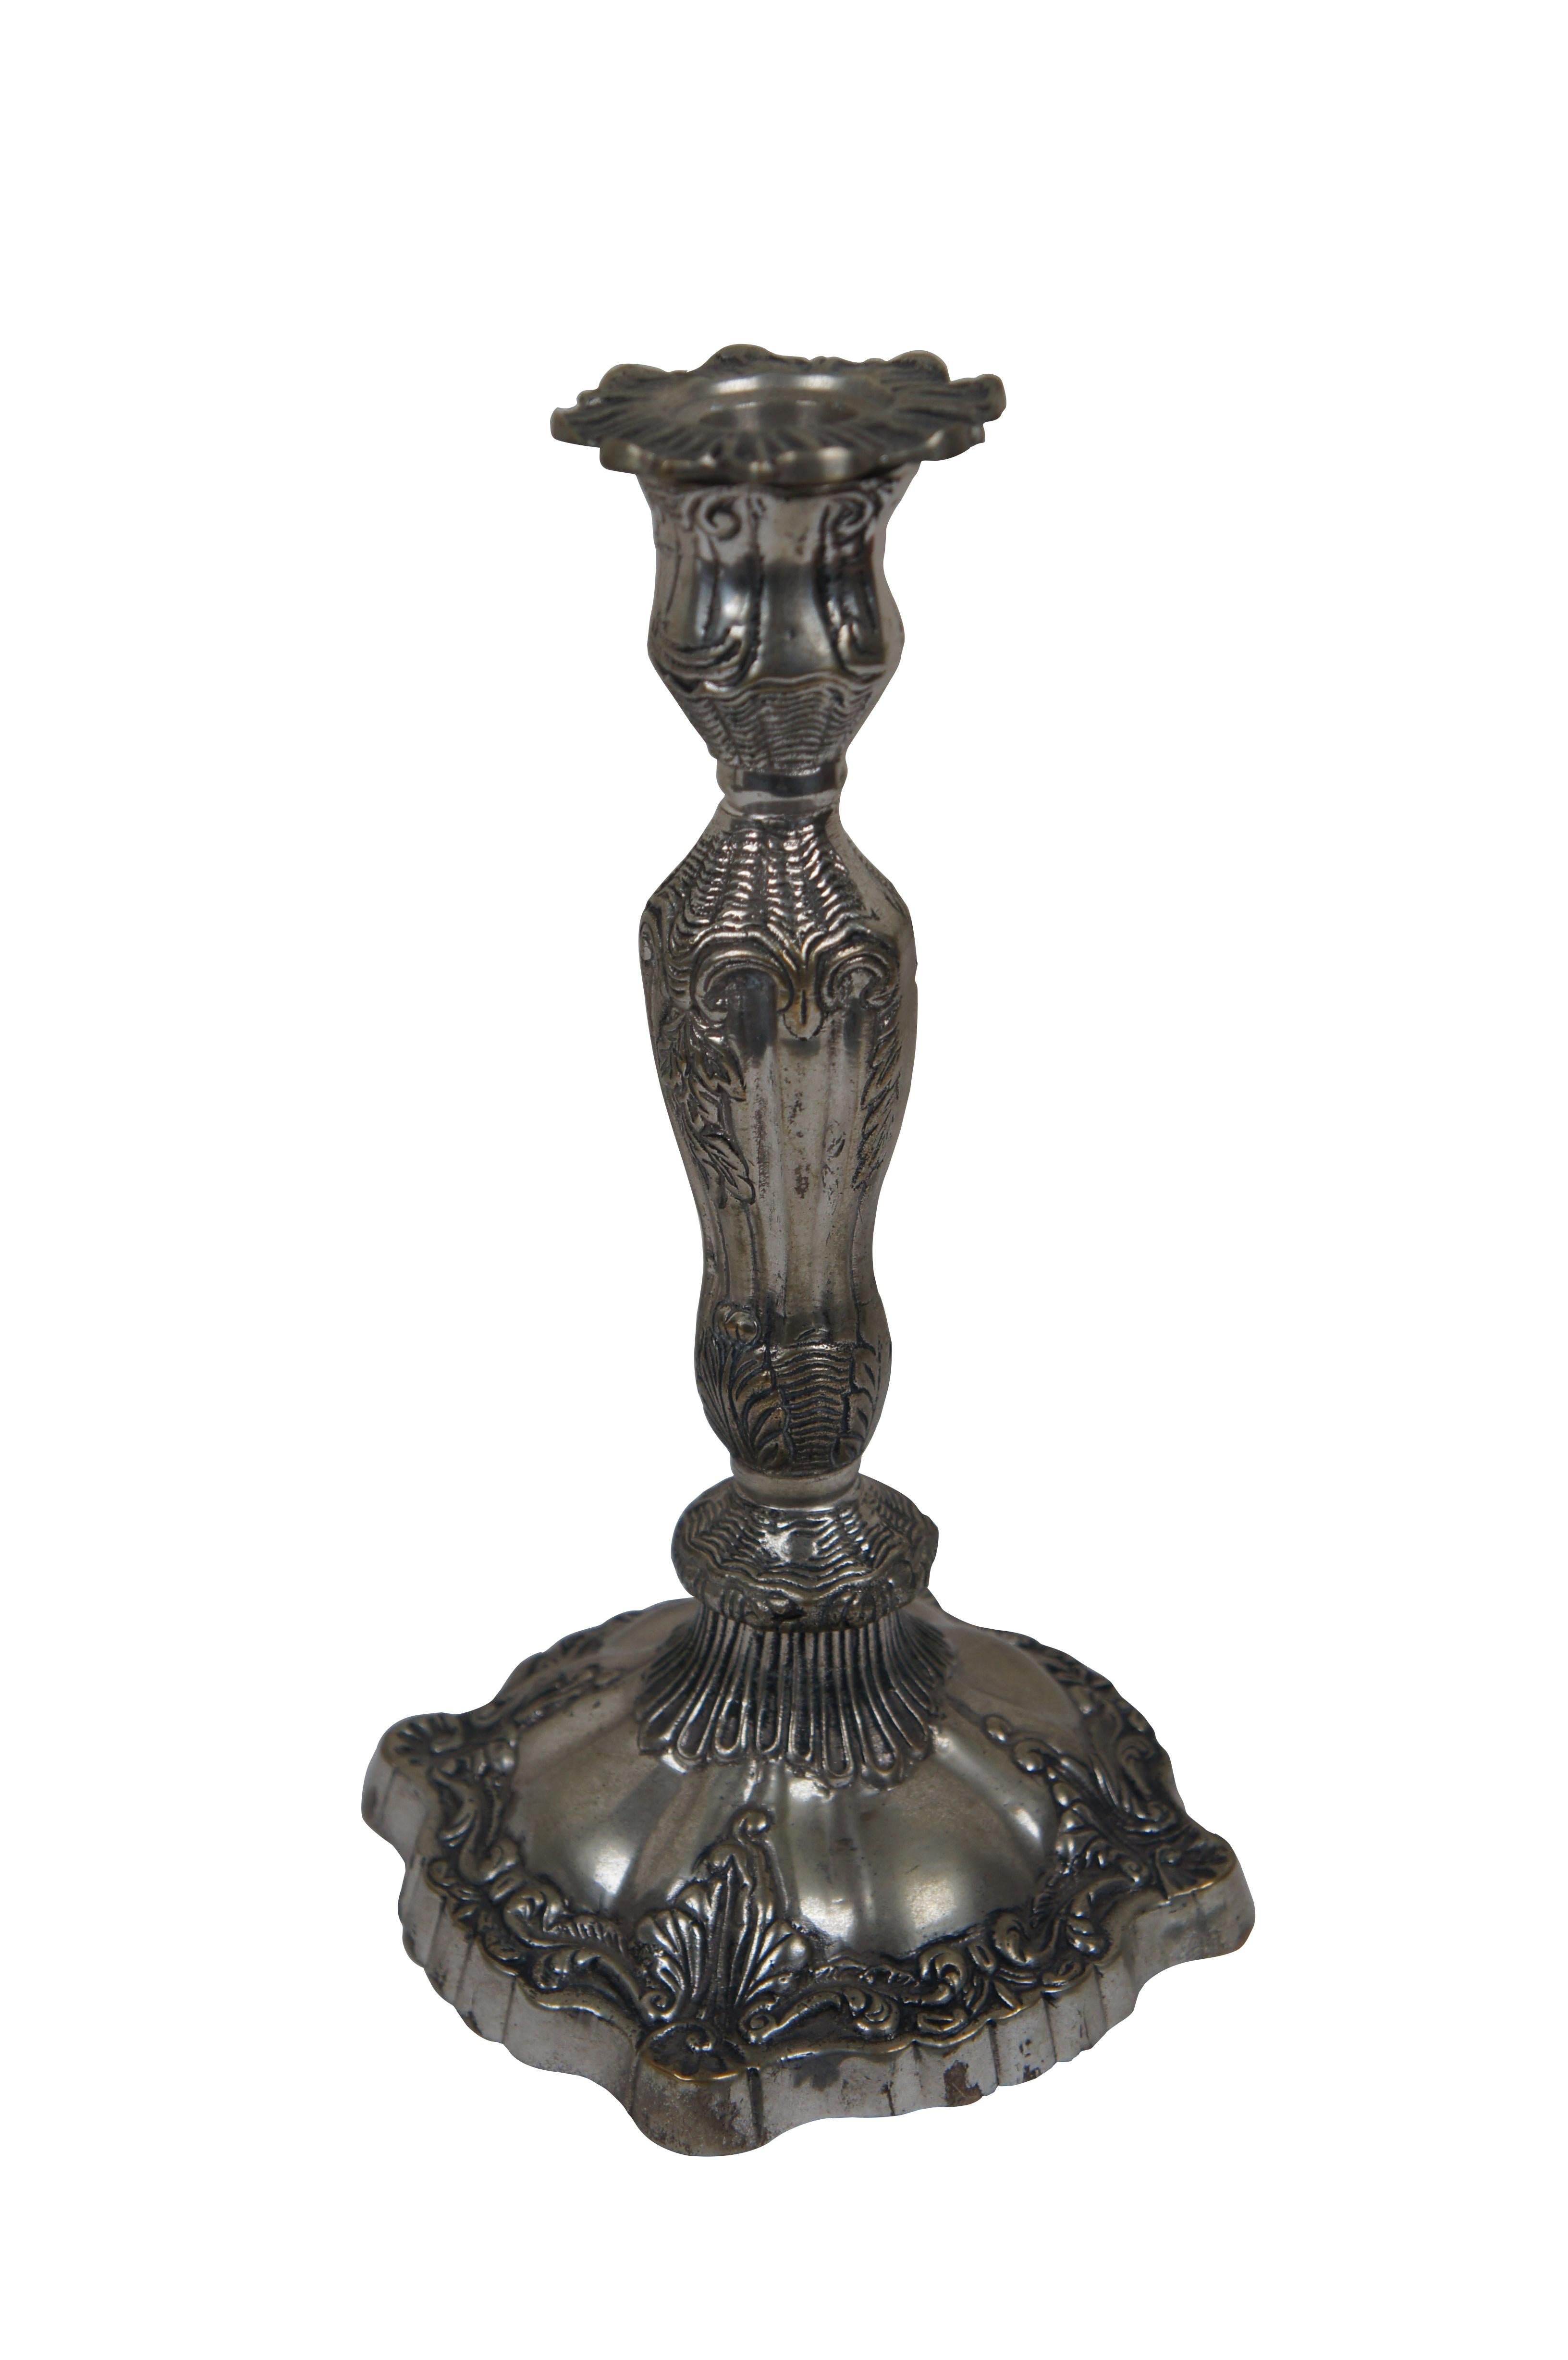 Paire de lourds chandeliers victoriens en métal argenté de la fin du 19e au début du 20e siècle, avec des coupes de bougie en forme de pétales de fleurs et des motifs de festons et de feuillages de style art nouveau. 

Dimensions :
5,5